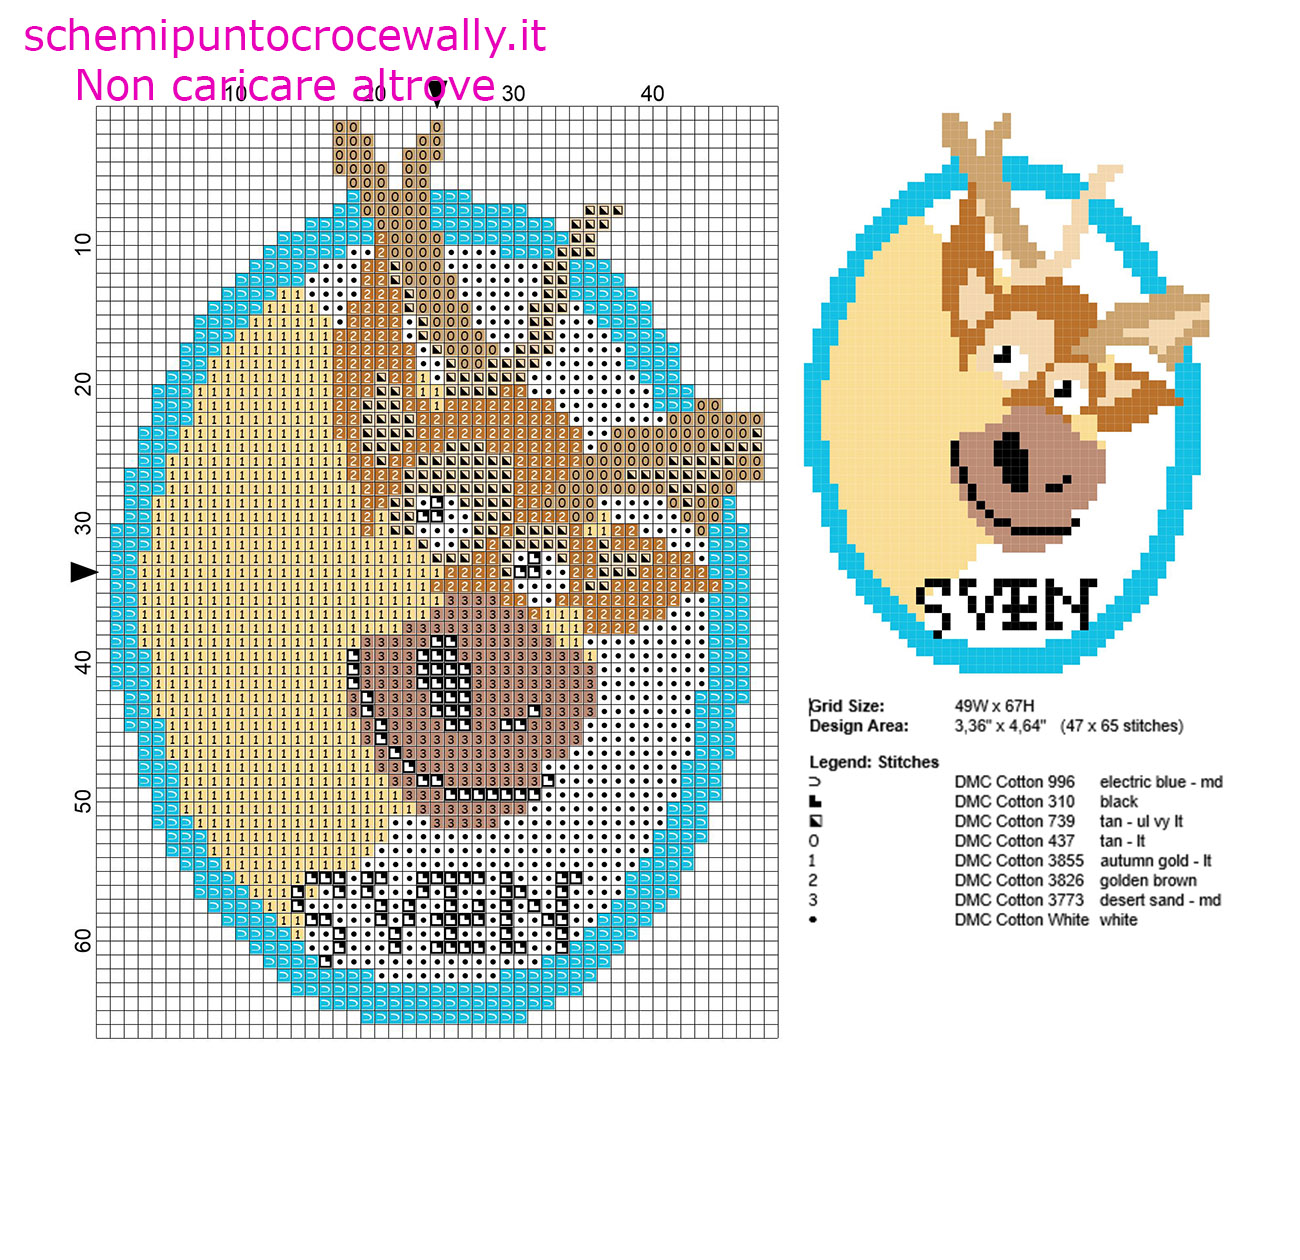 Sven la renna di Frozen piccolo schema punto croce 47 x 65 crocette 8 colori marca DMC